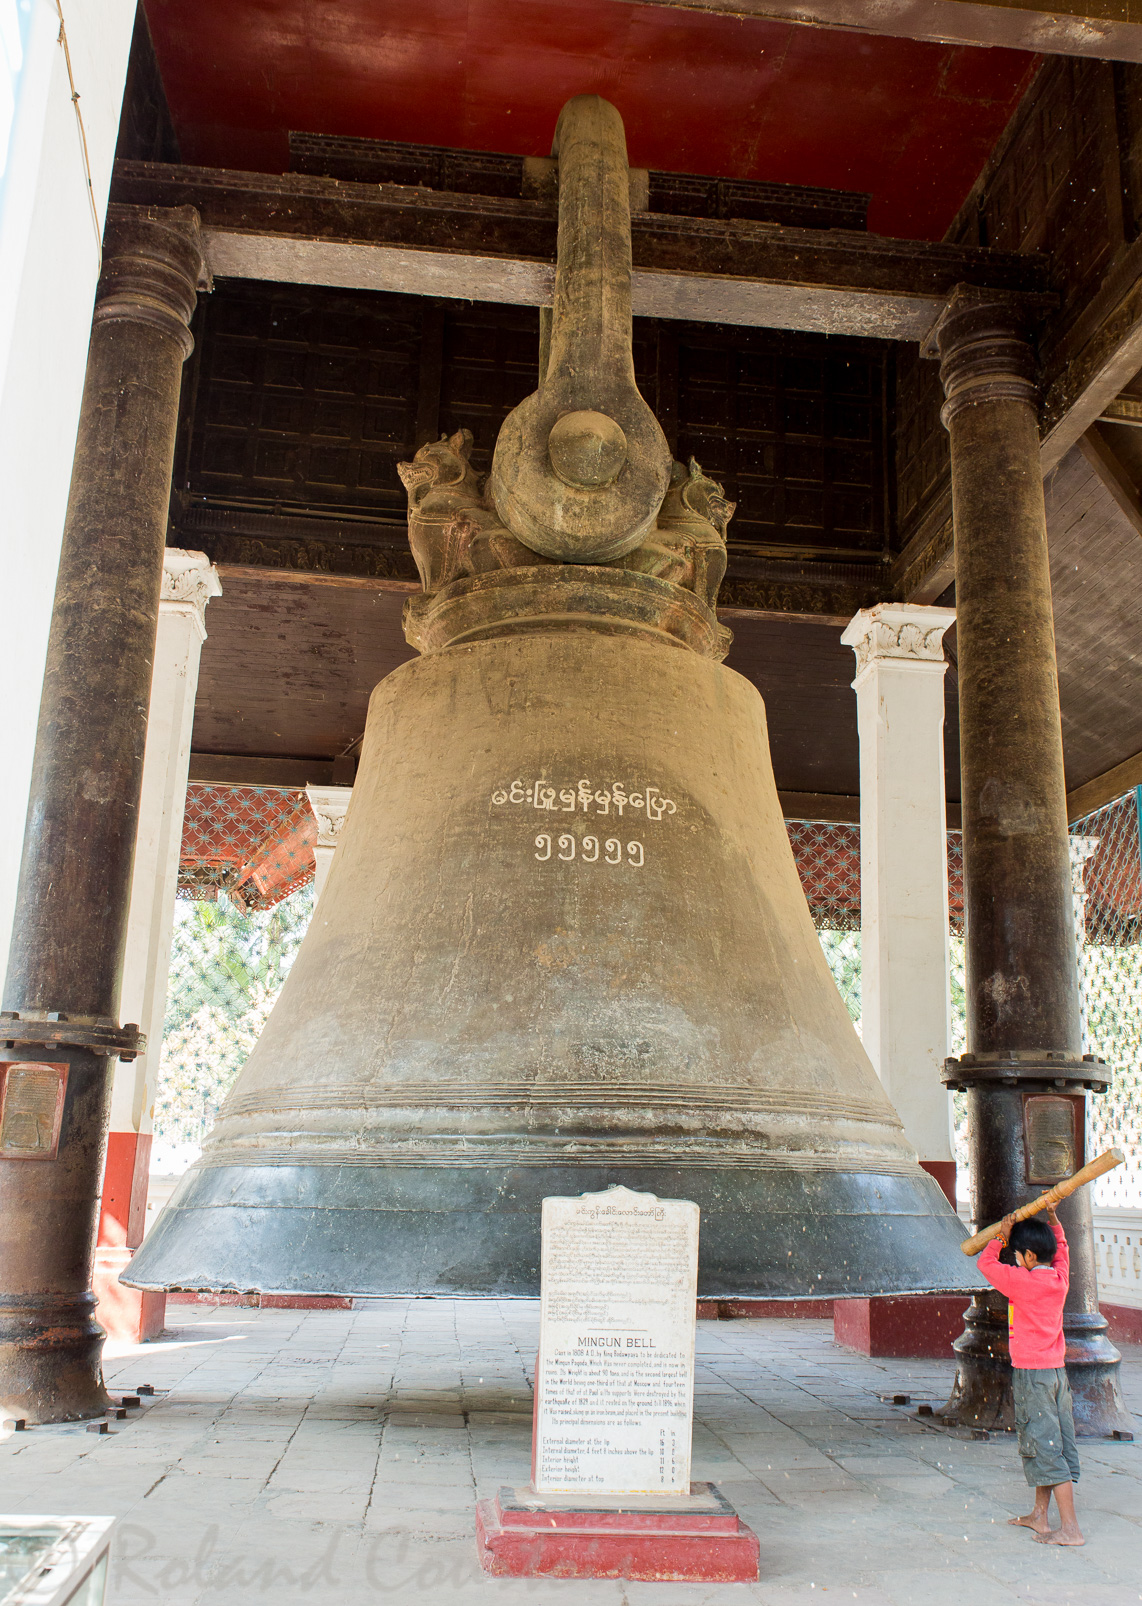 La cloche en bronze destinée à la pagode Mantaragyi est restée intacte. Avec ses 100 tonnes, elle est considérée comme la plus lourde au monde.